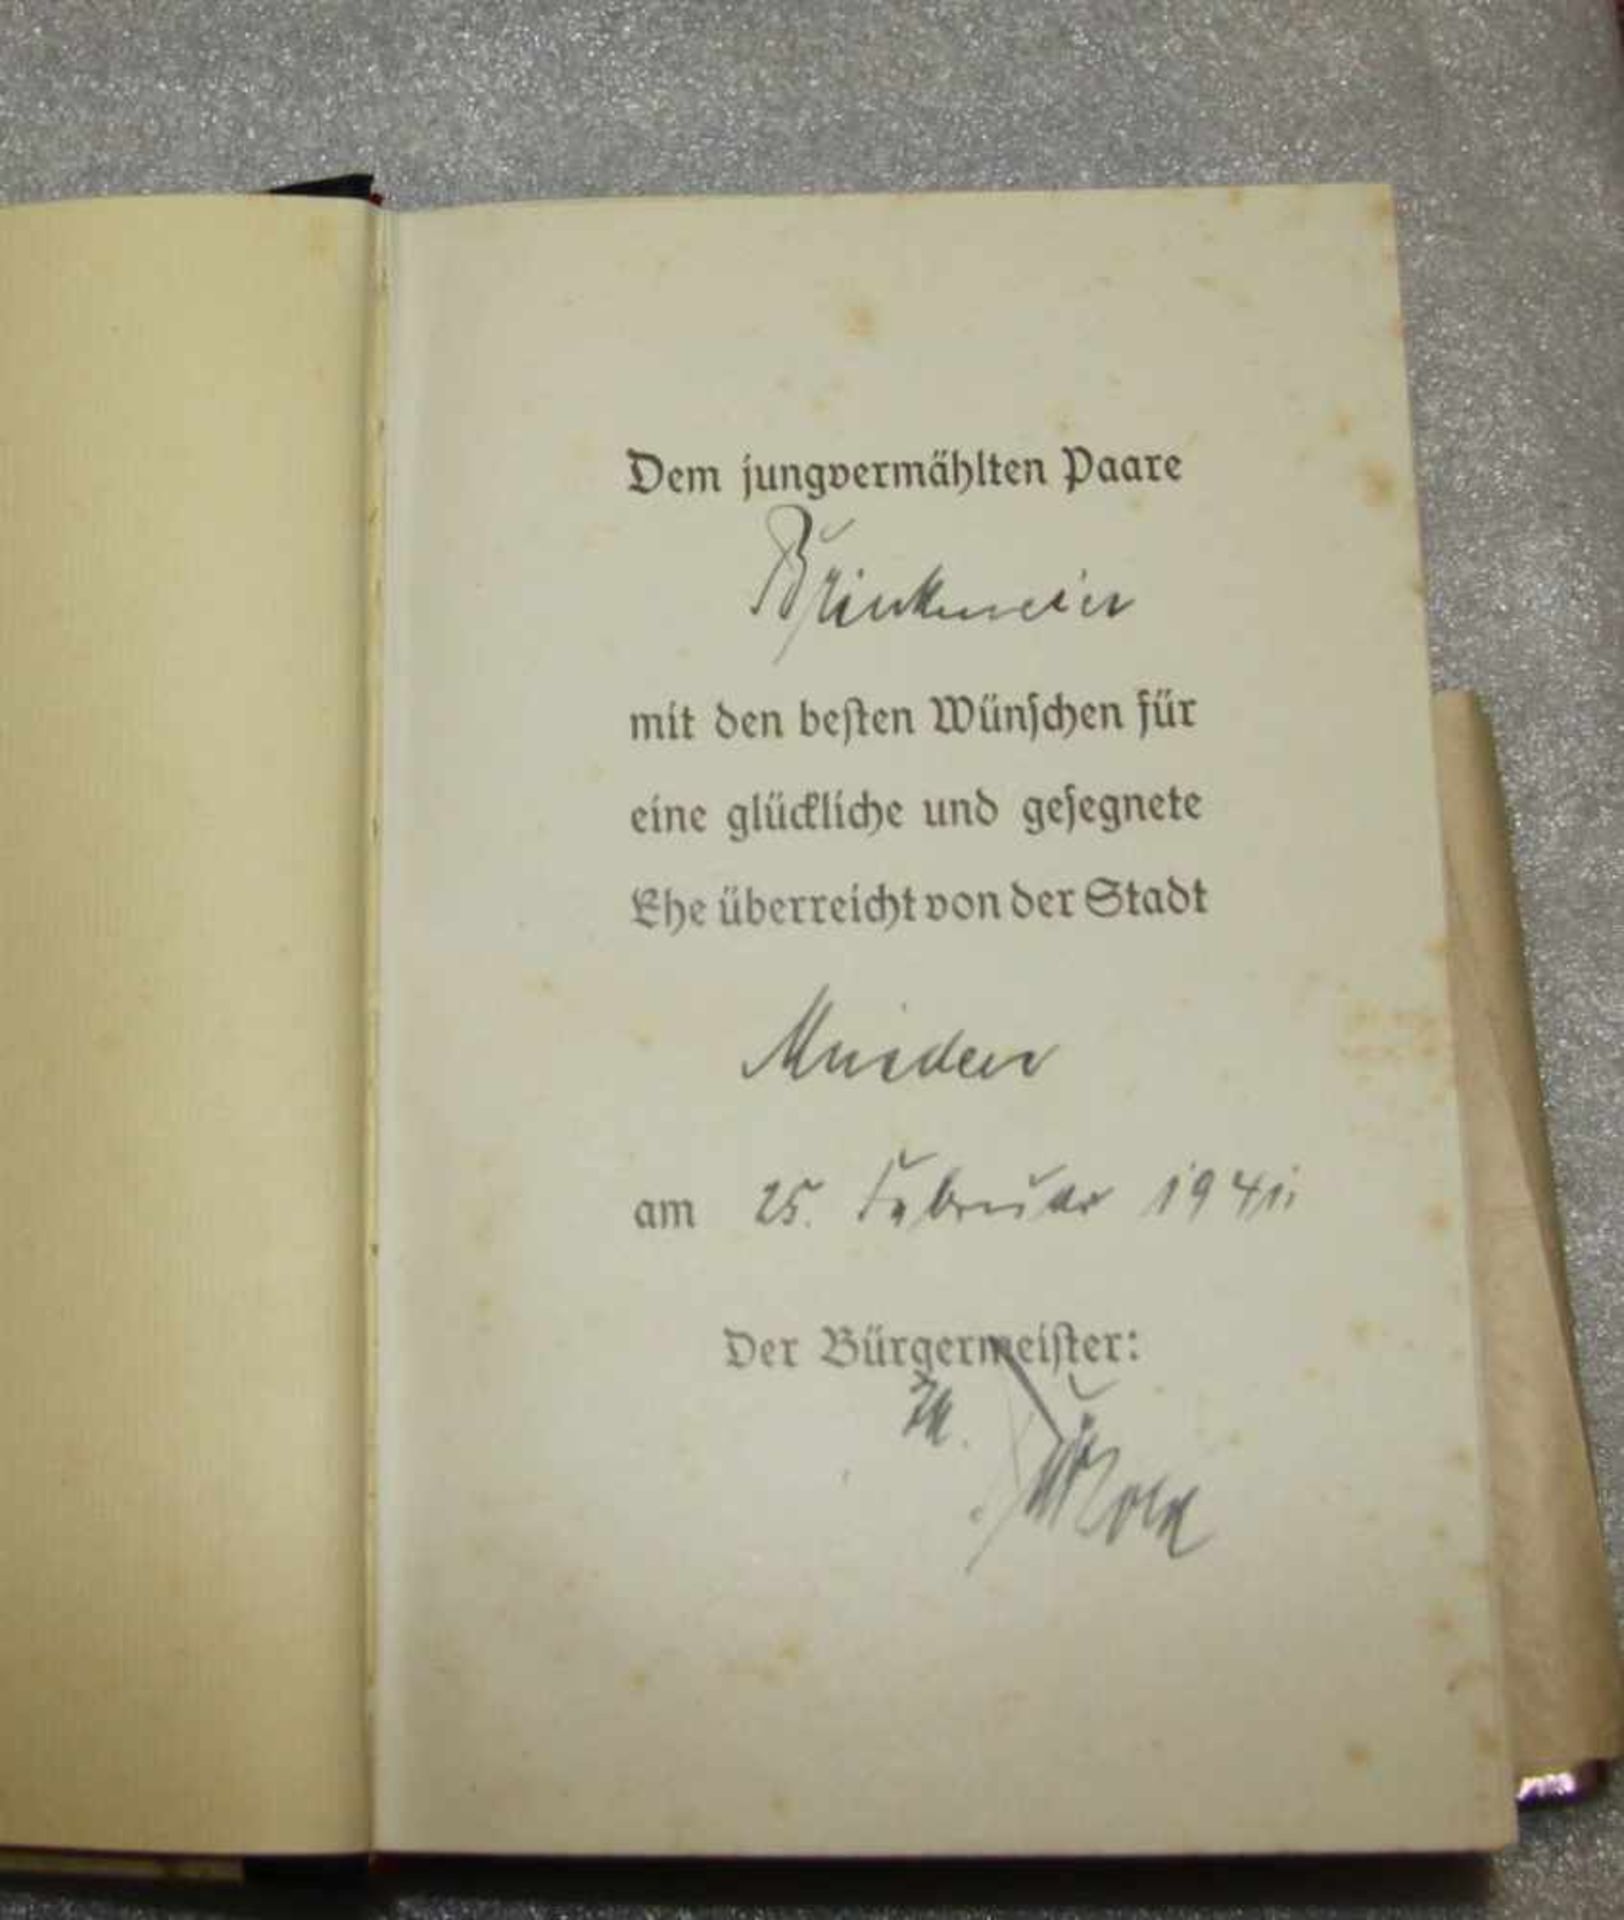 Mein Kampf Adolf Hitler, 558.-562.Auflage, München 1941. - Bild 2 aus 2